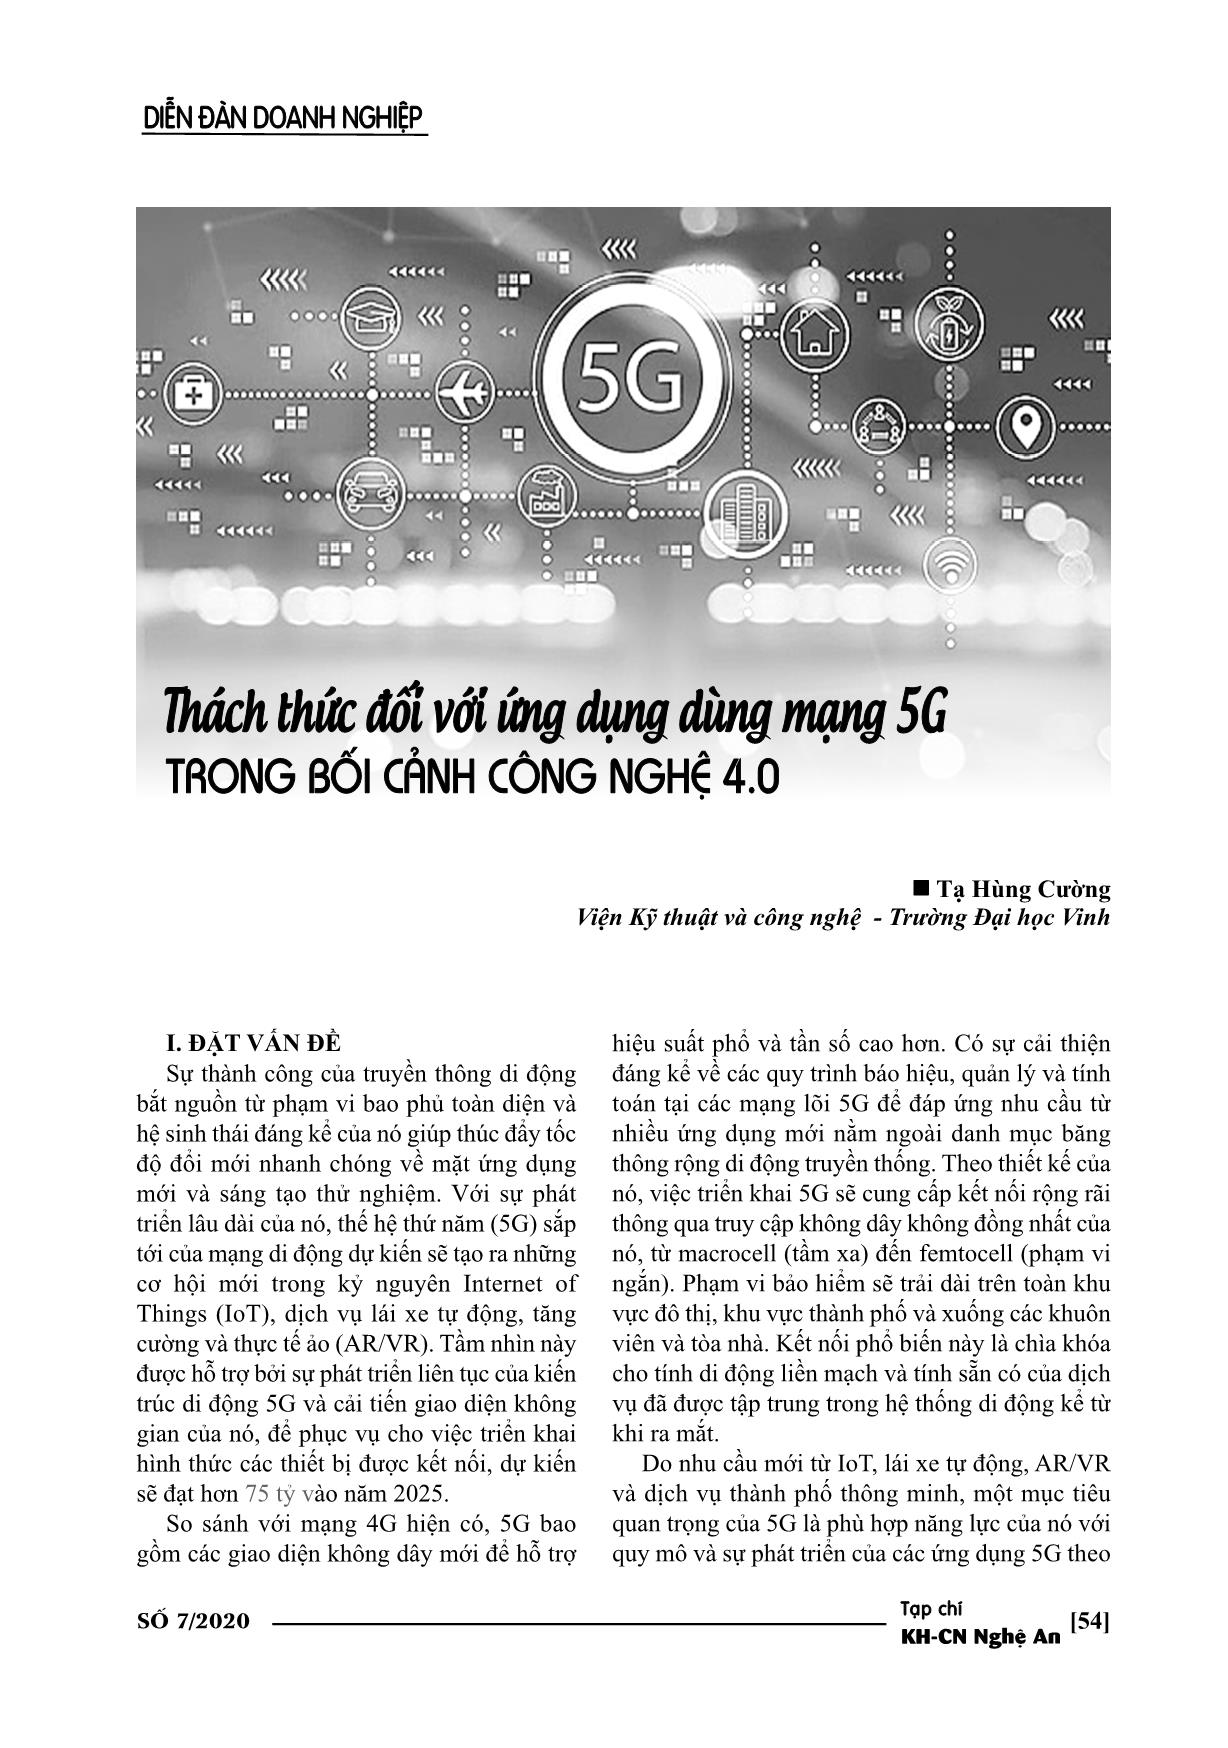 Thách thức đối với ứng dụng dùng mạng 5G trong bối cảnh công nghệ 4.0 trang 1